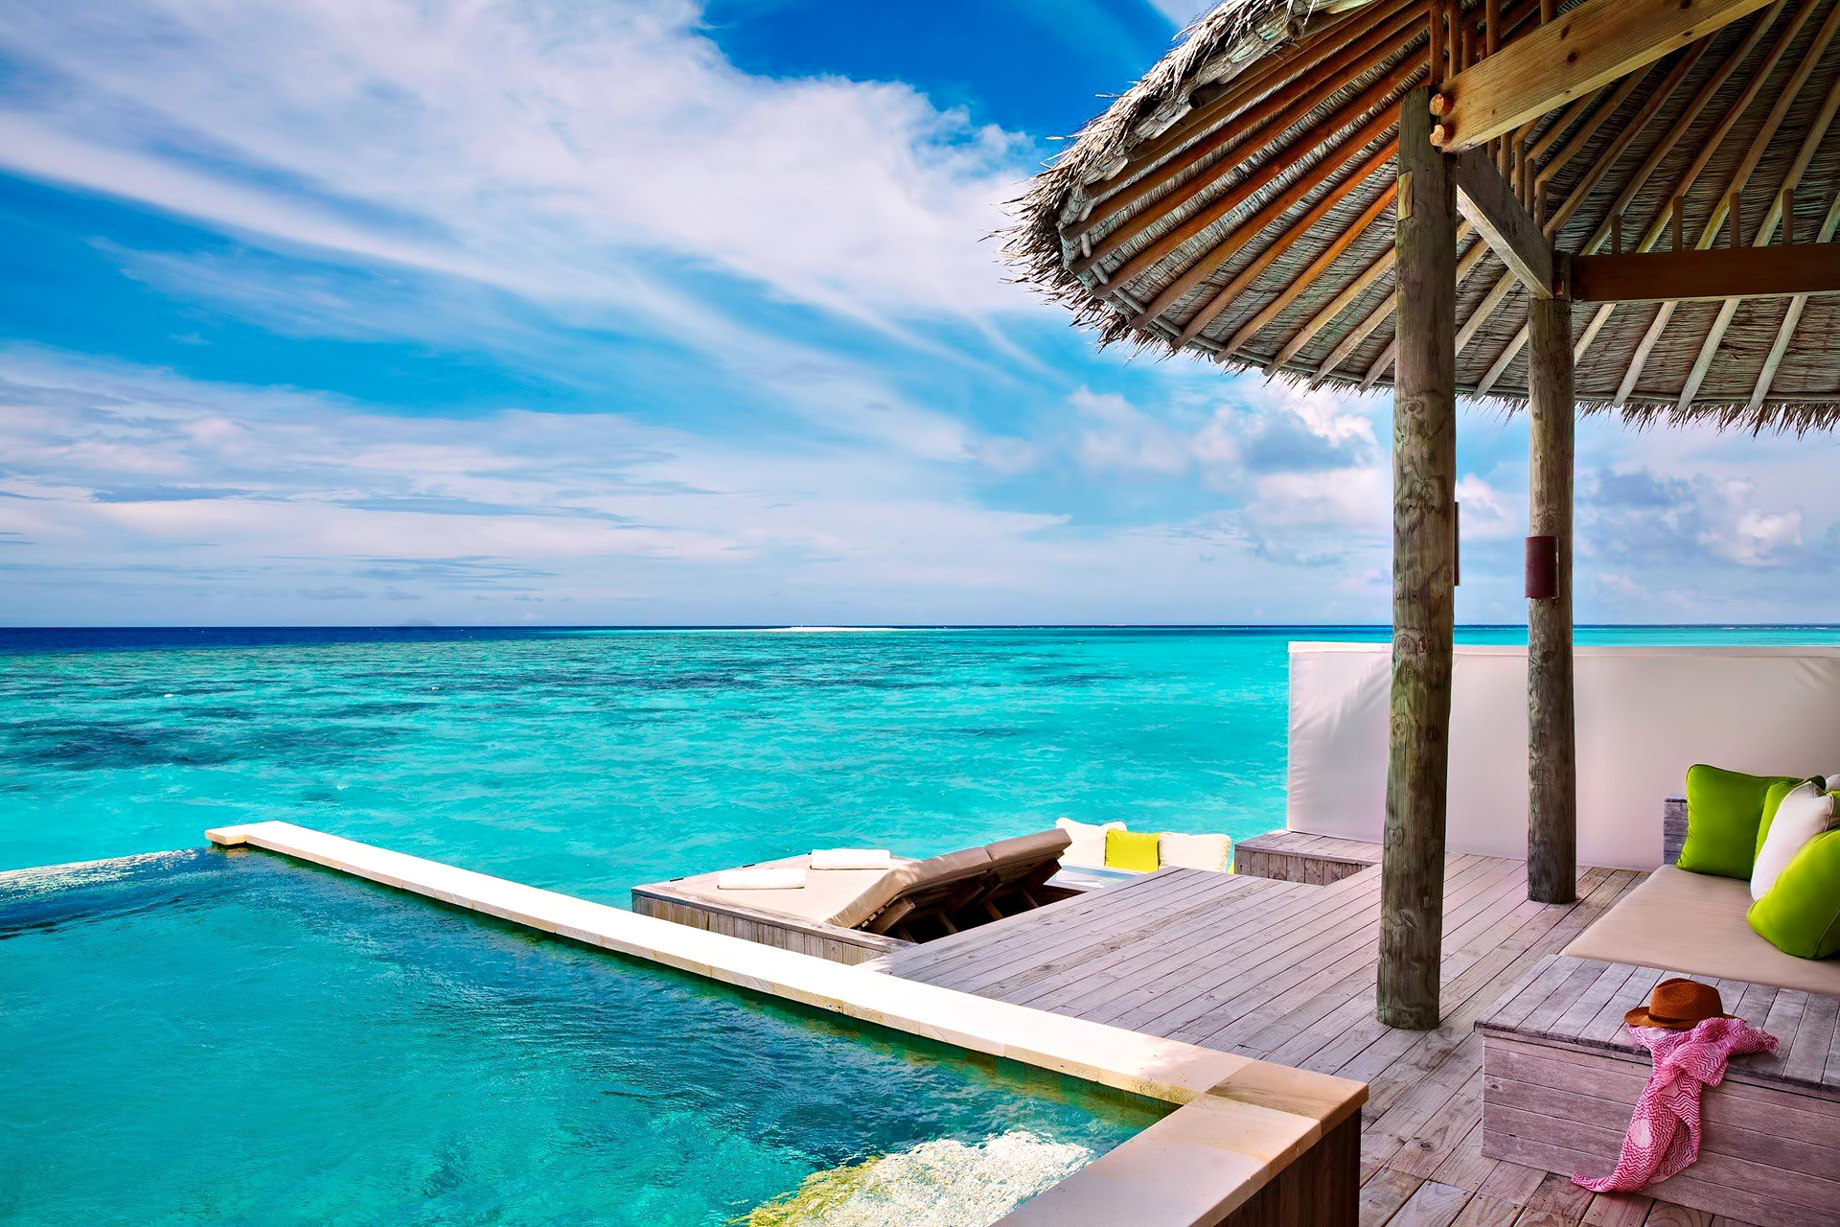 Six Senses Laamu Resort – Laamu Atoll, Maldives – Overwater Villa Pool